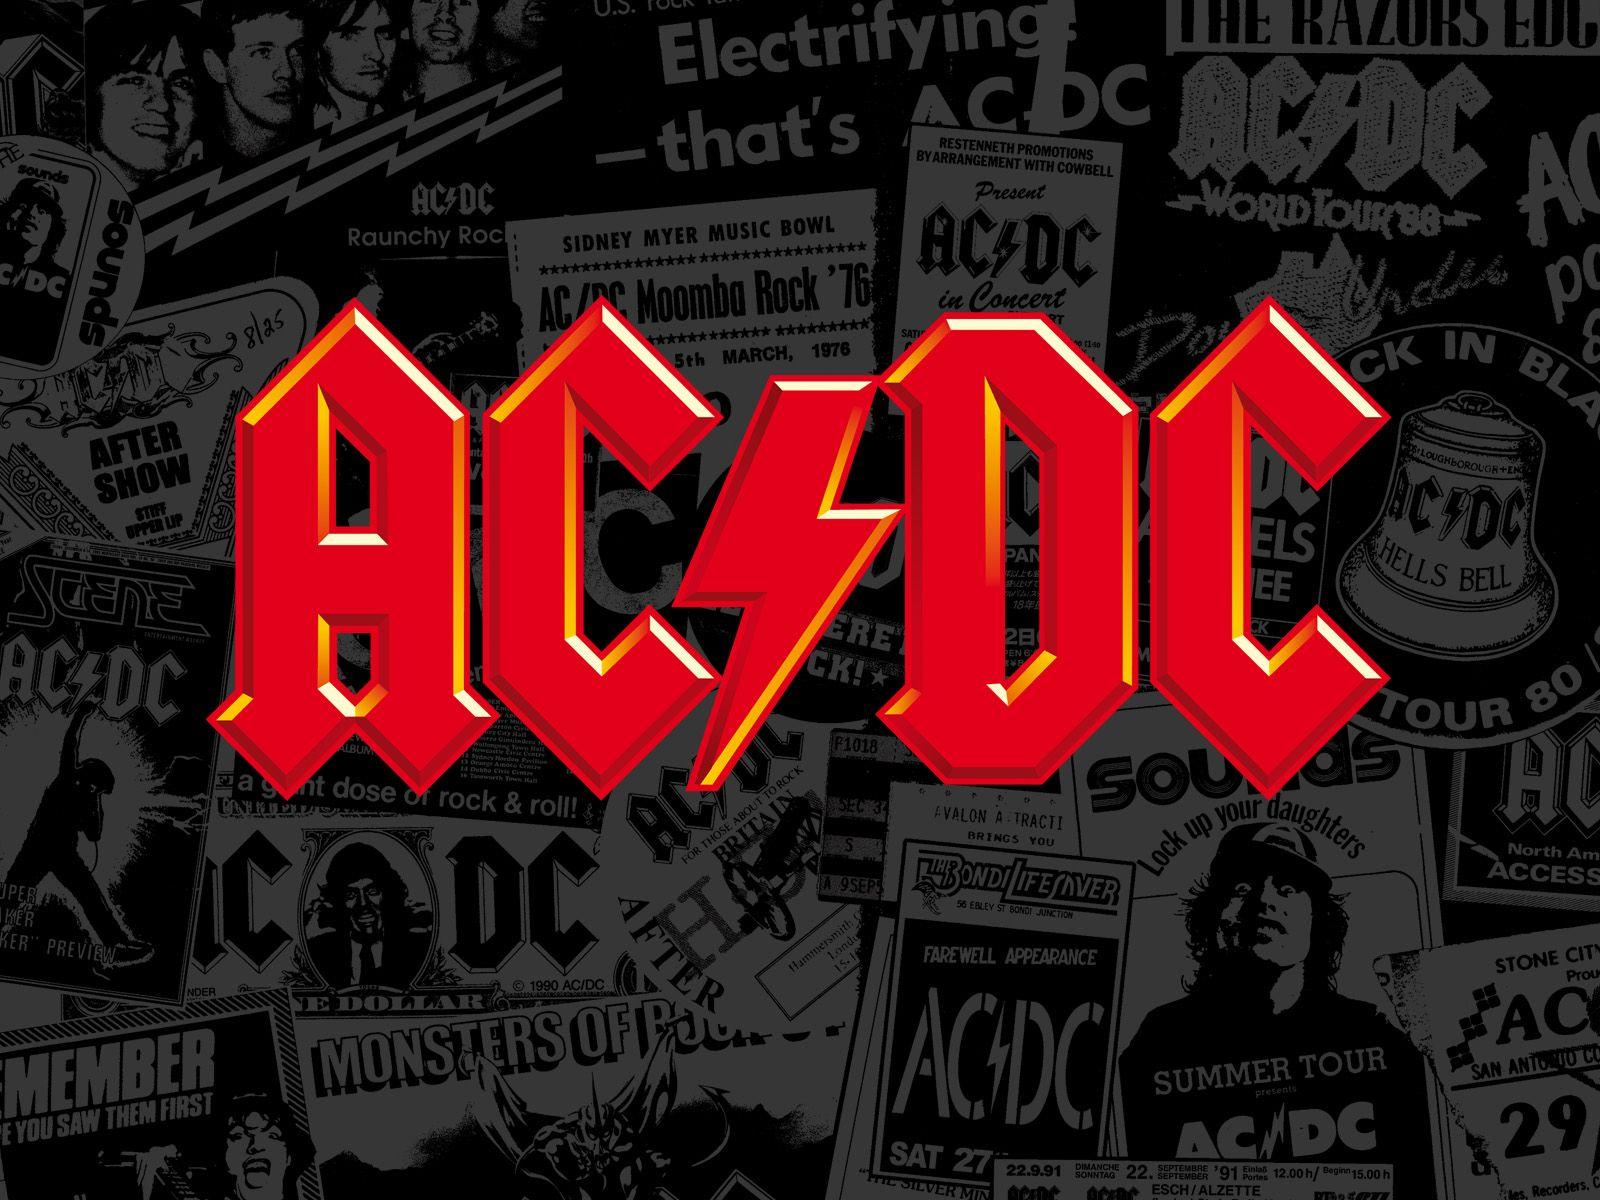 AC DC Australian Rock Band Logo HD Wallpaper